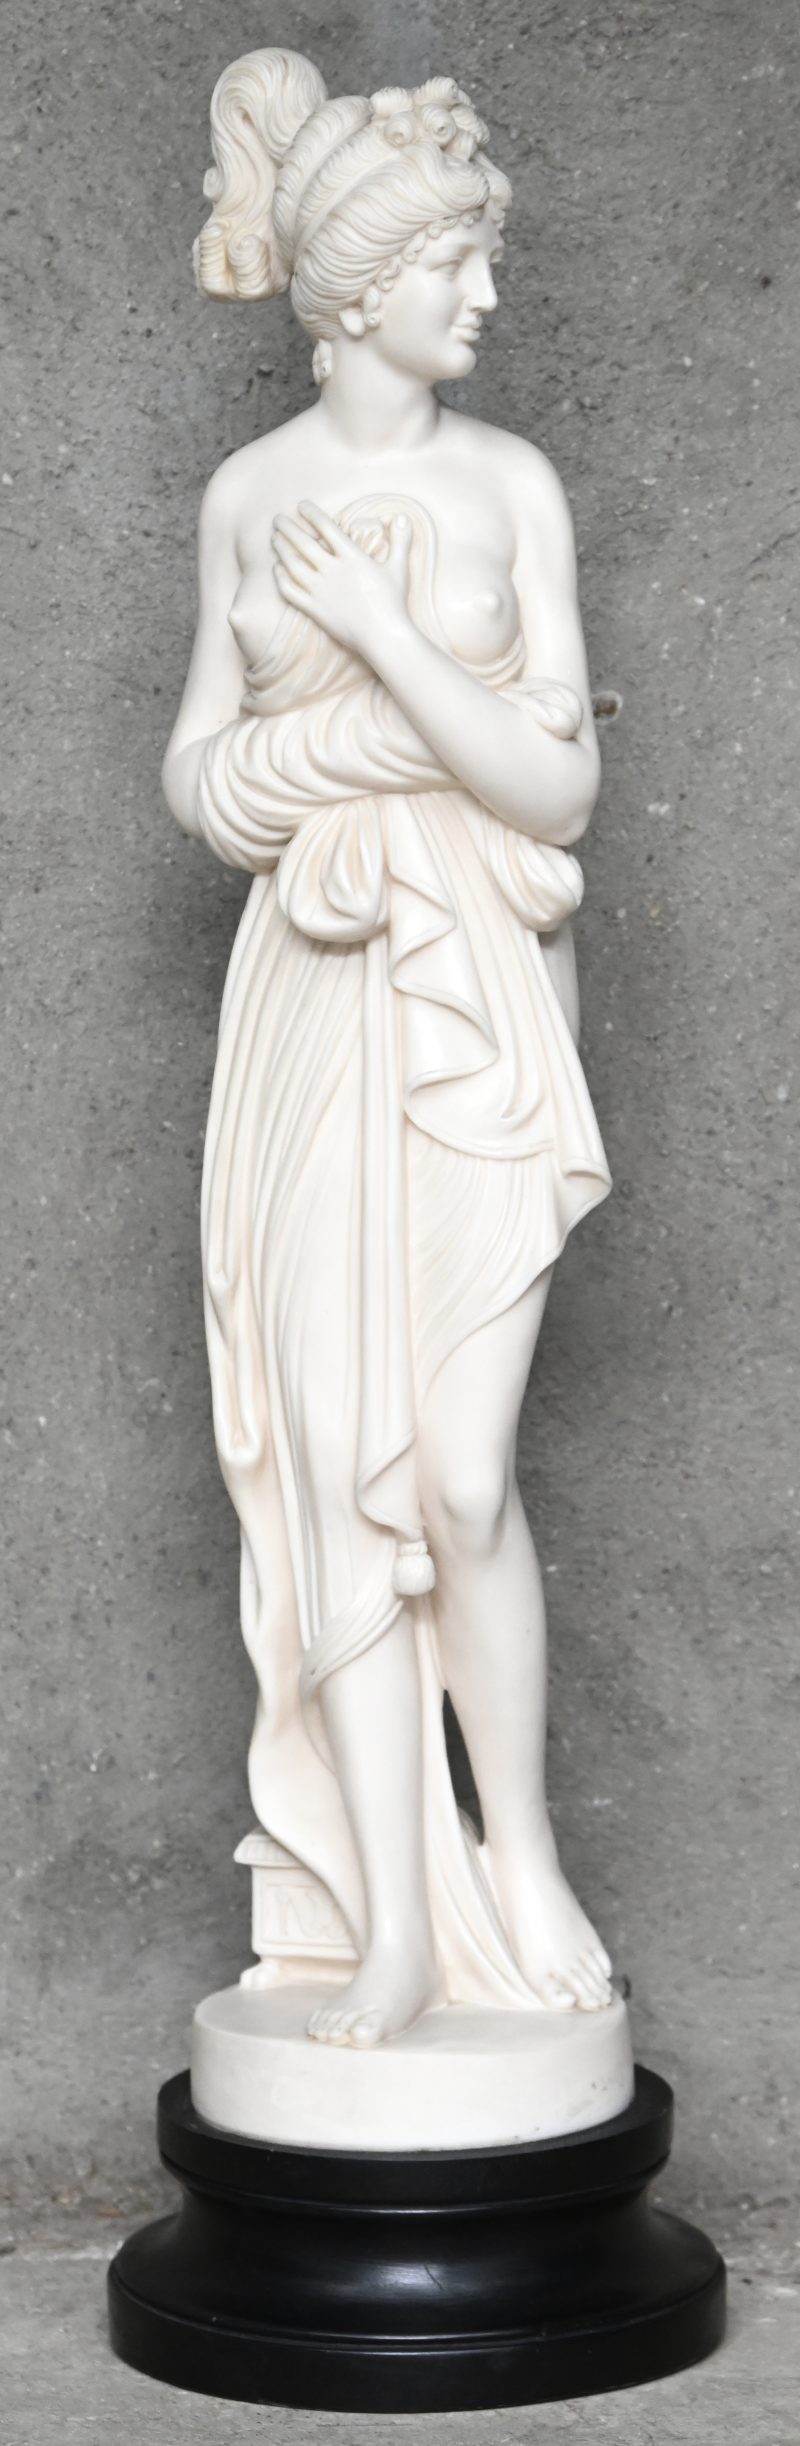 Een uit kunststof gesculpteerd beeld van een gesluierde Venus Italica met ontblote borst, op houten voet.